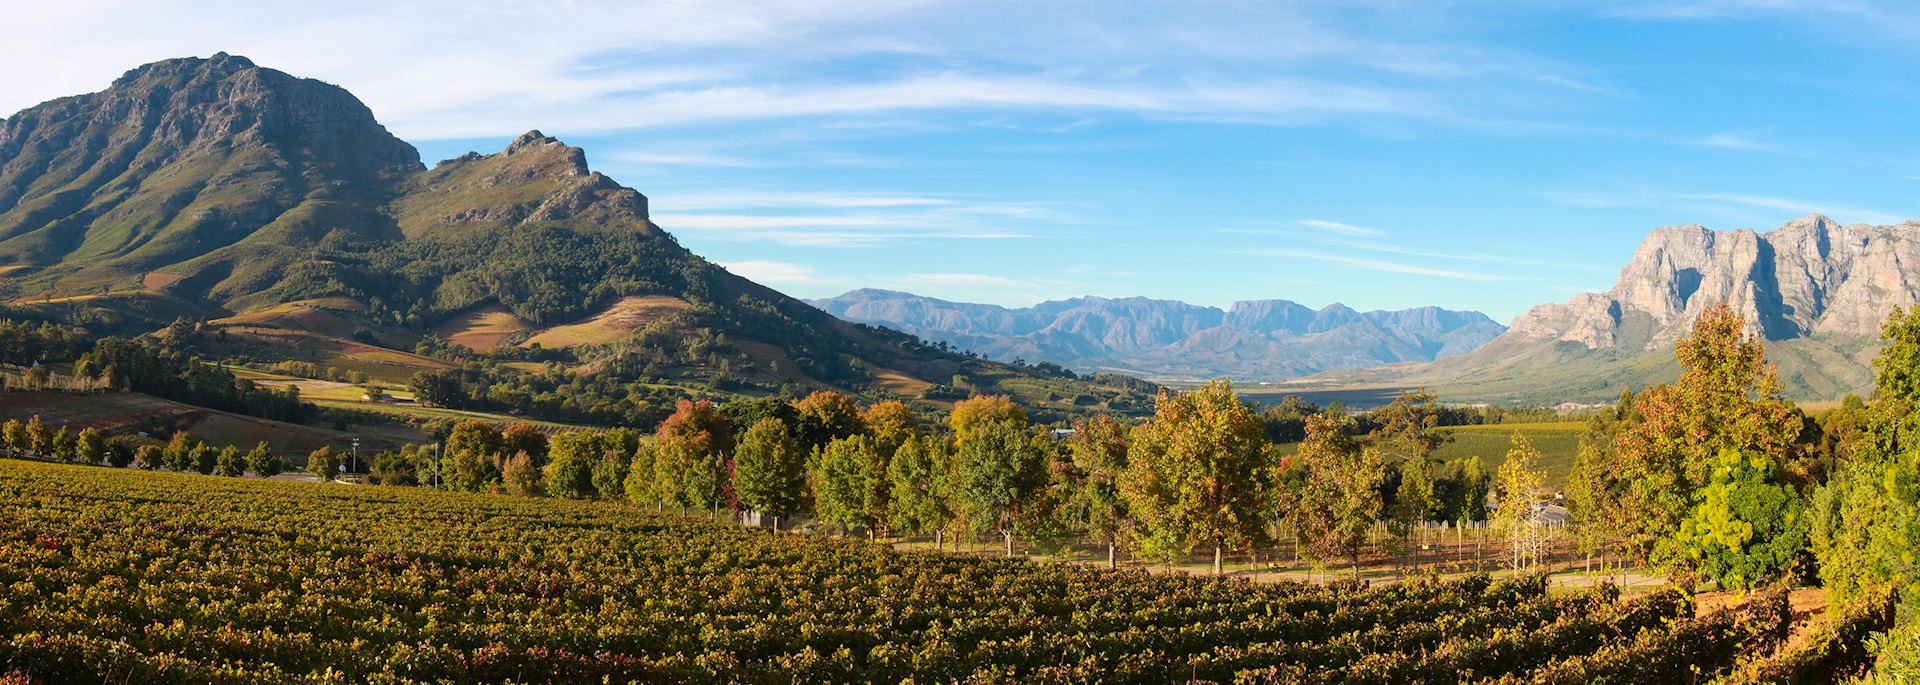 Vineyard near Cape Town